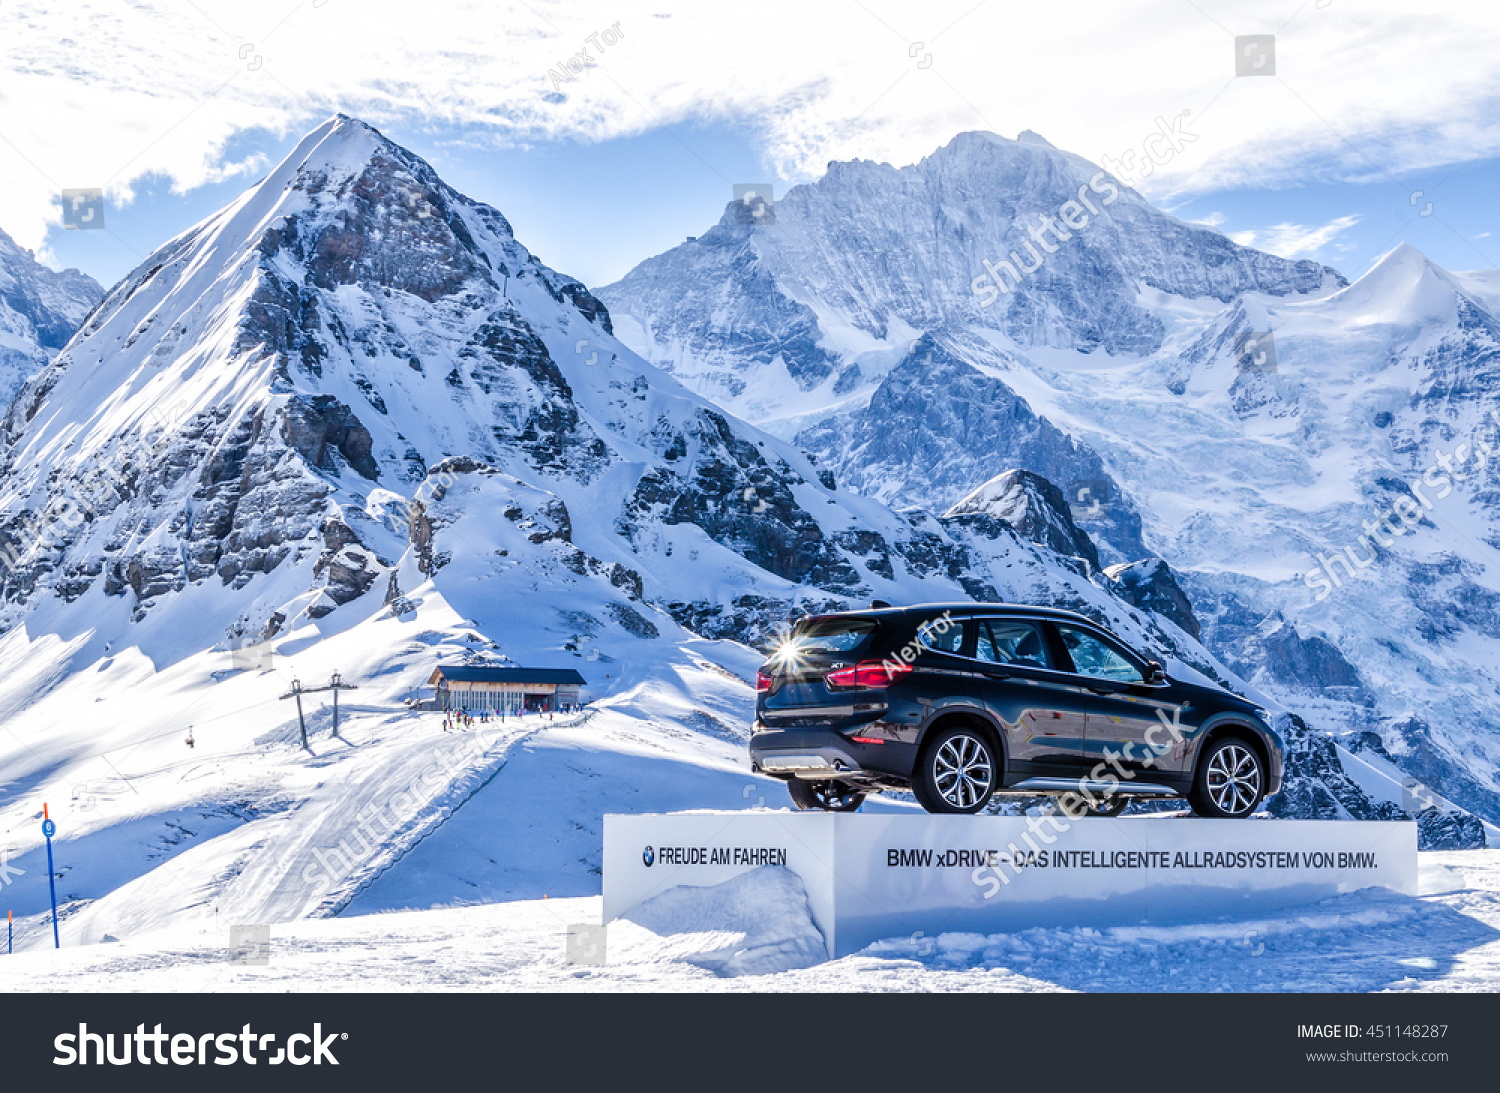 Switzerland Ski Resort Jungfrau February 21 Stock Photo Edit Now